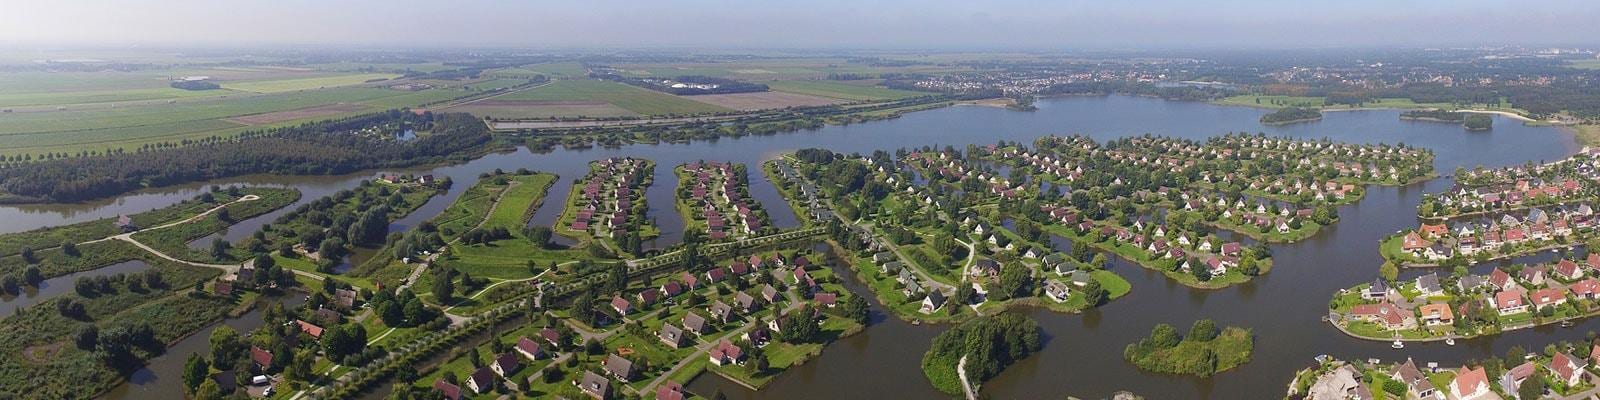 Ferienpark Emmen, Drenthe, Niederlände